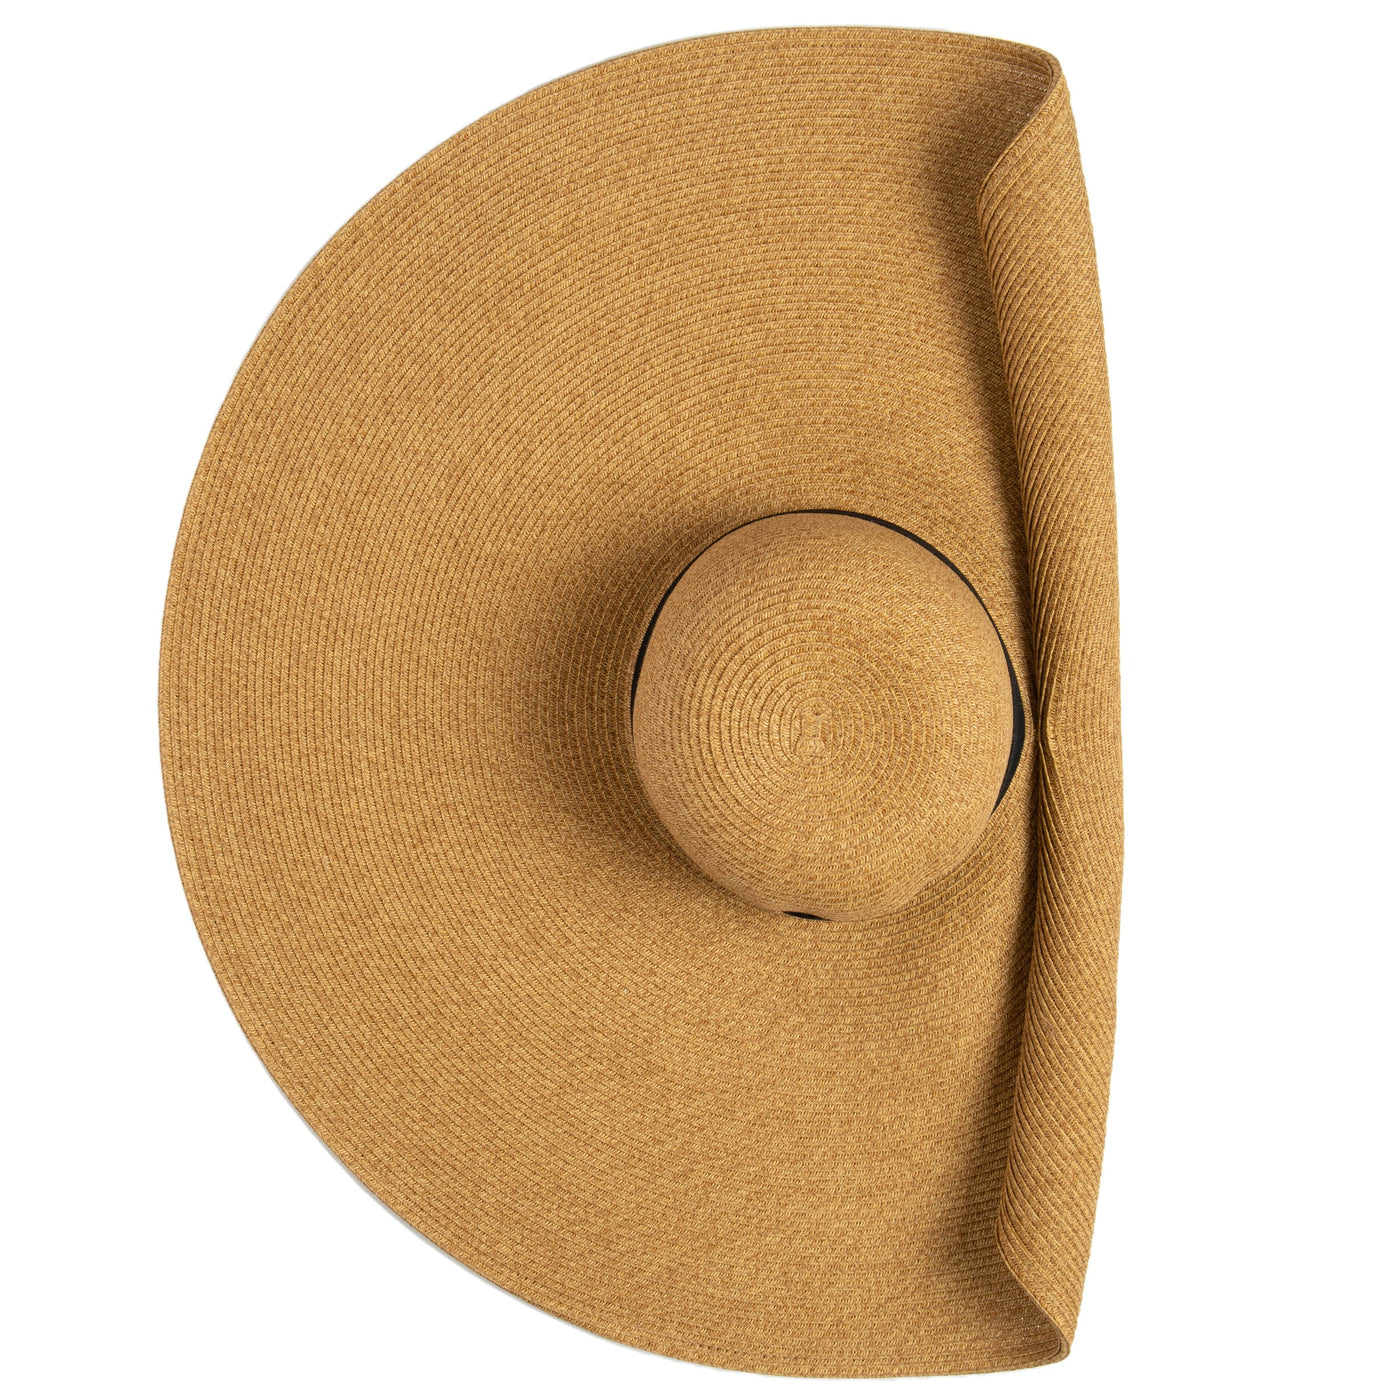 SUN BRIM - Women's Ultrabraid Side Tack Fold Sun Hat